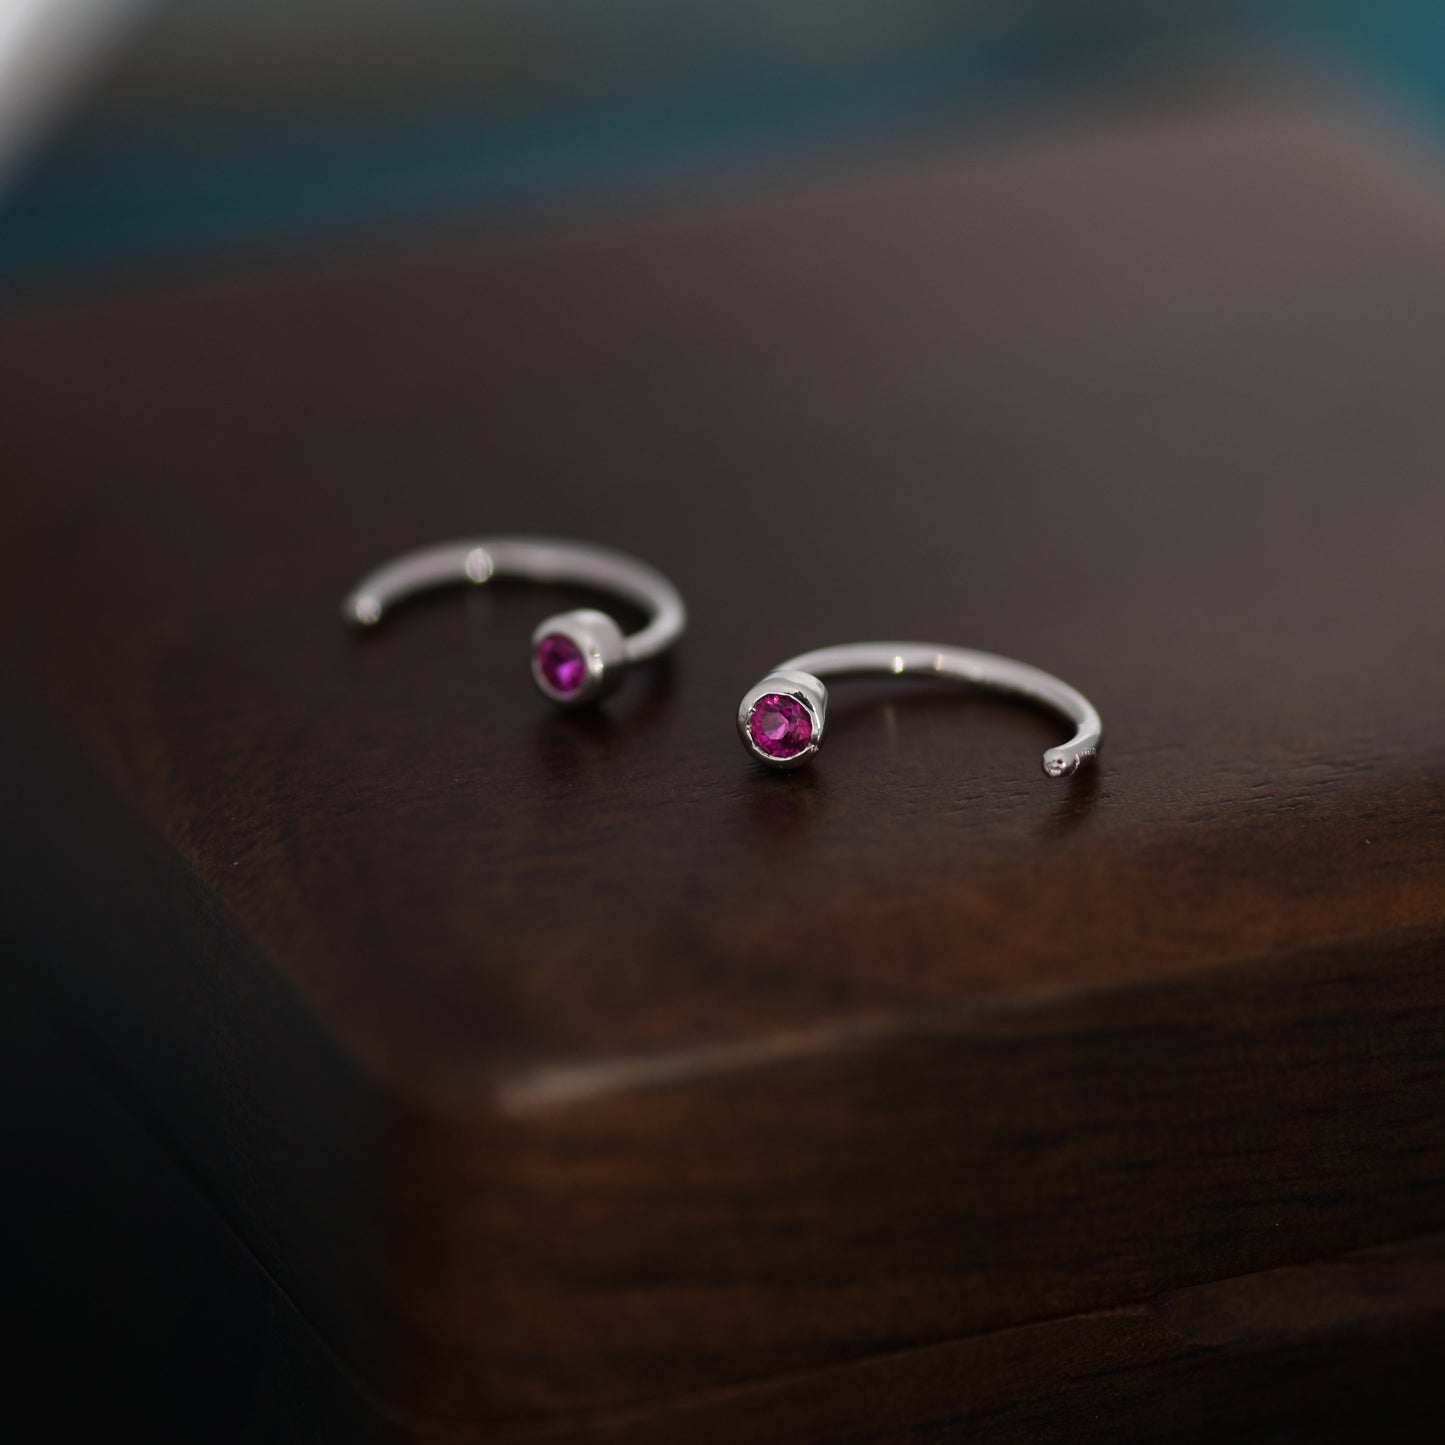 2mm Ruby Pink CZ Huggie Hoop Earrings in Sterling Silver, Silver, or Gold, Half Hoop, Open Hoop, Pull Through,  July Birthstone